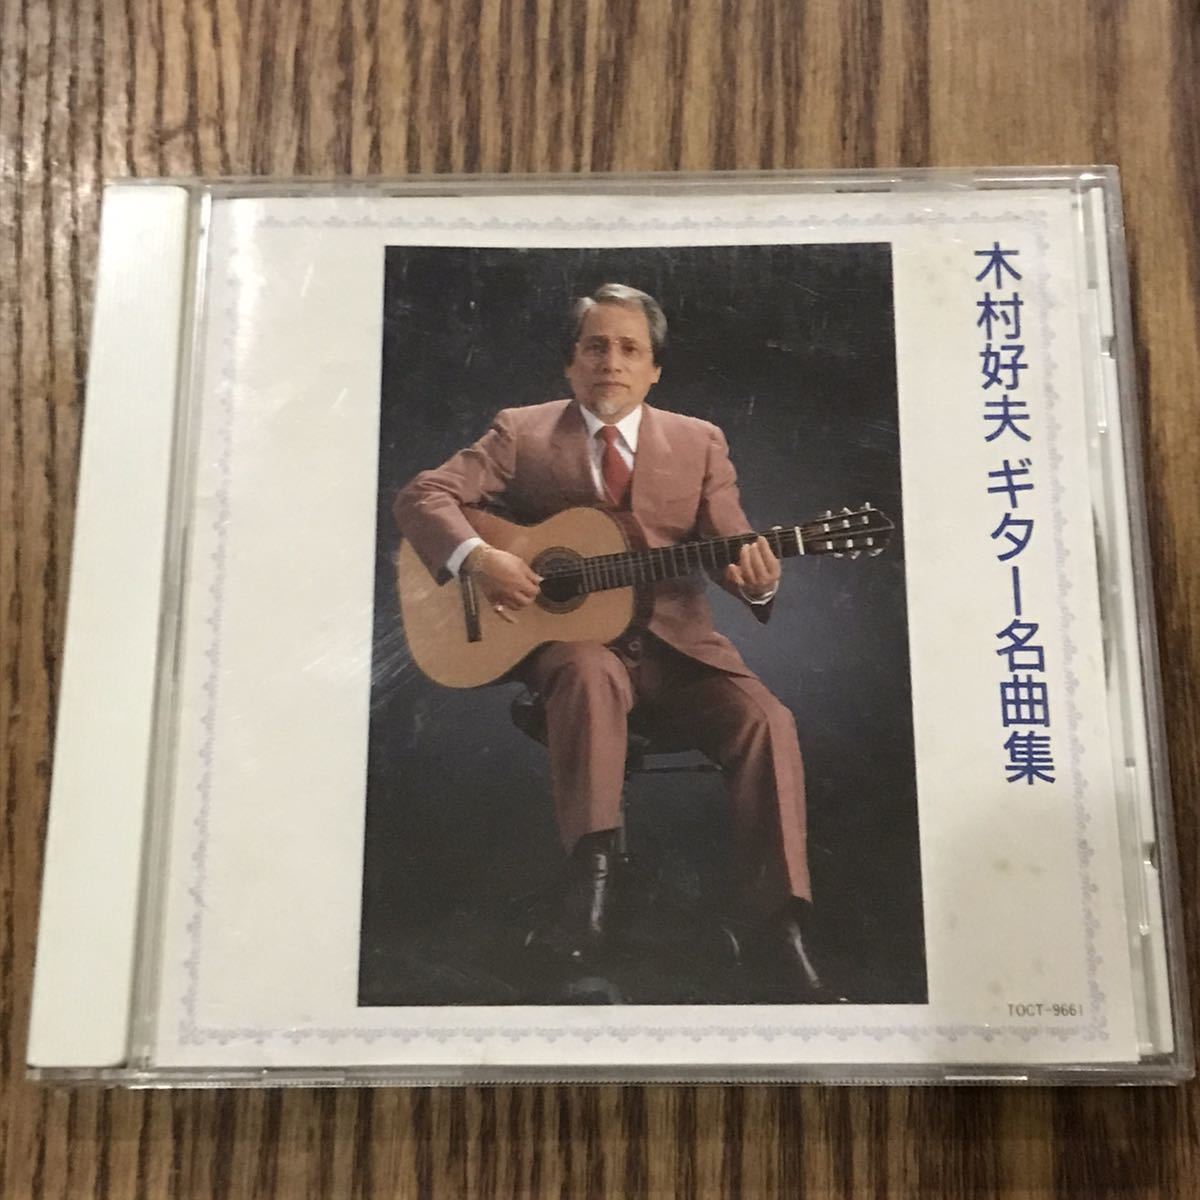 Yahoo!オークション -「木村好夫 cd」(音楽) の落札相場・落札価格